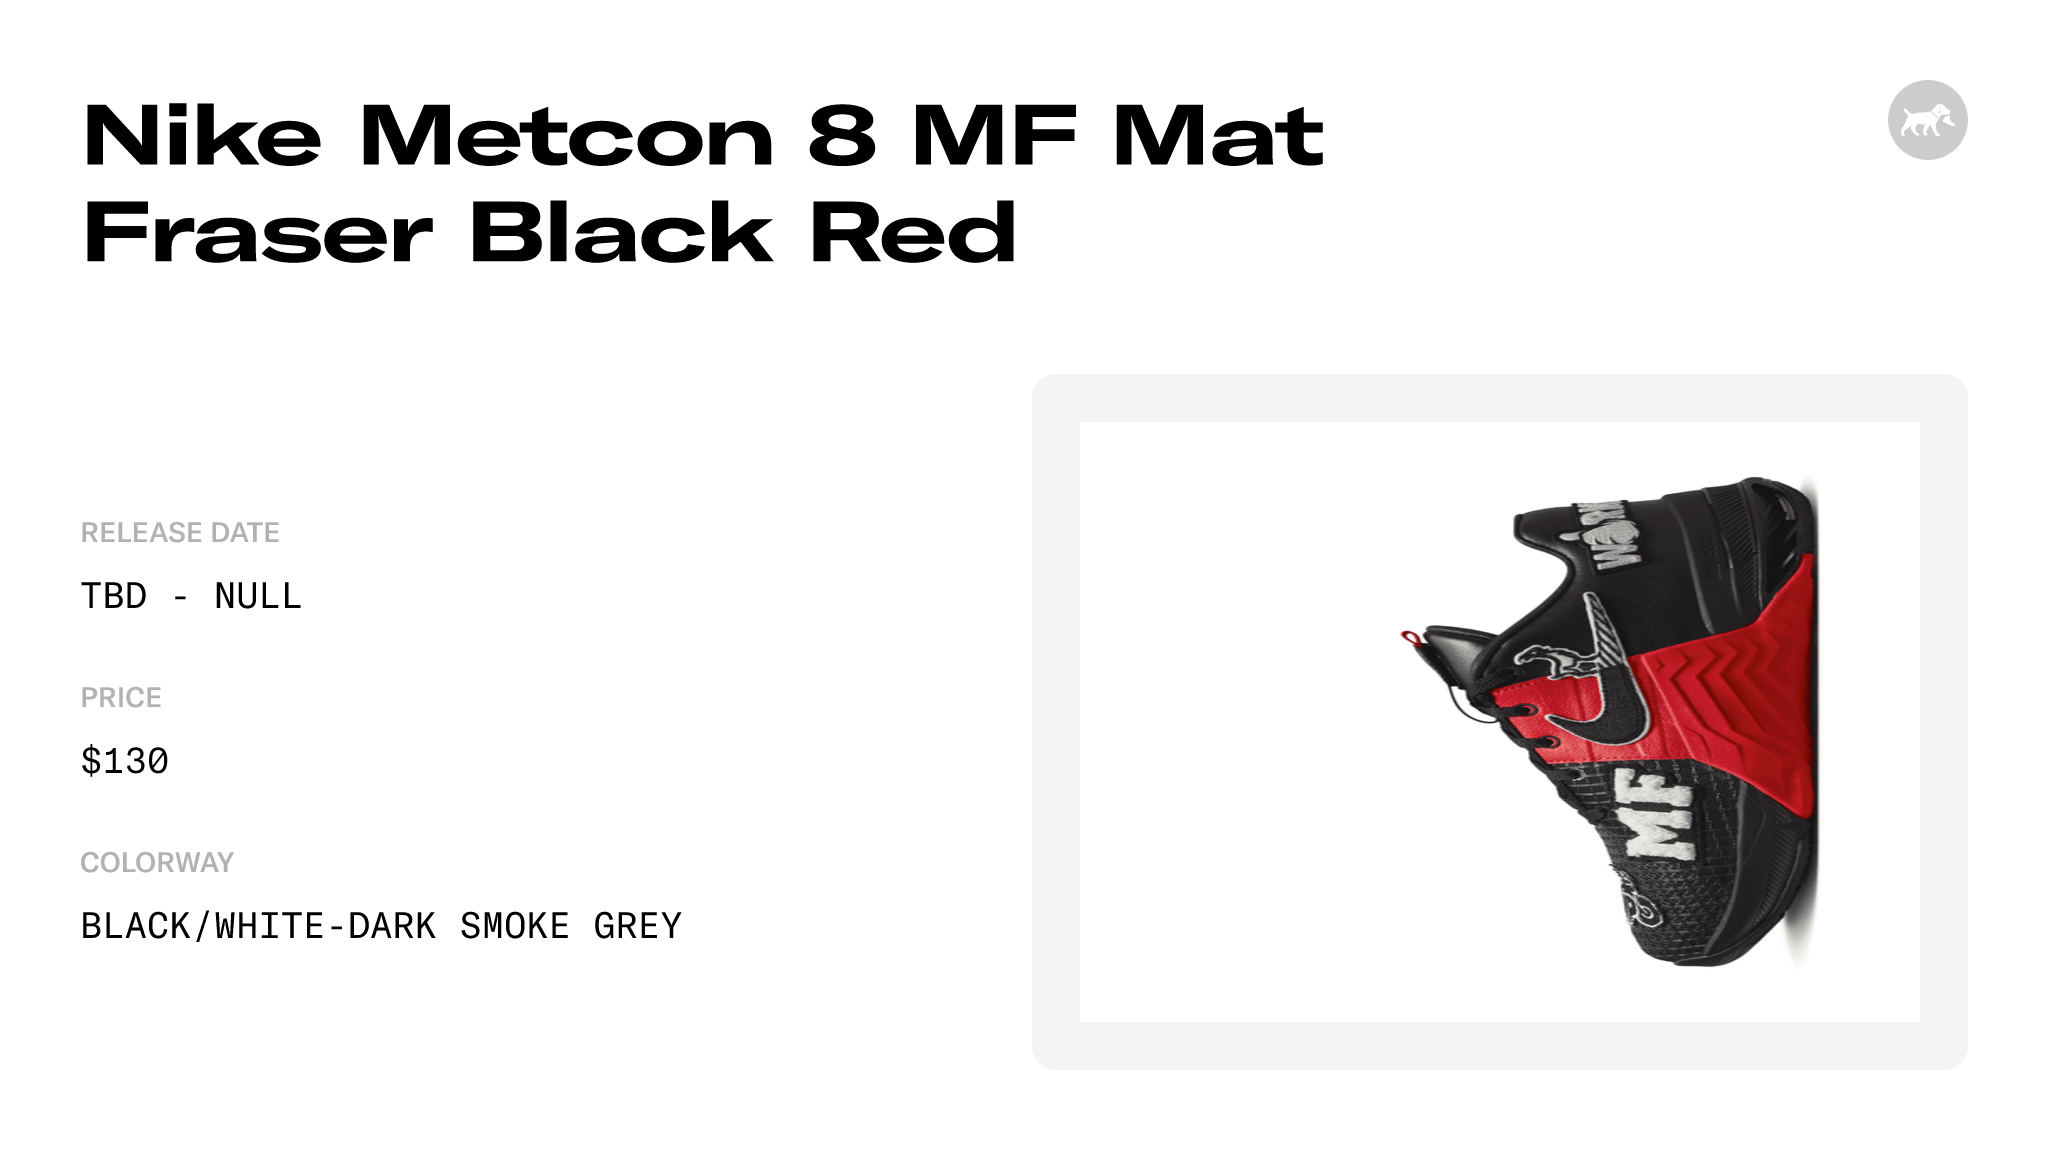 https://www.soleretriever.com/og/product/nike-metcon-8-mf-mat-fraser-black-red